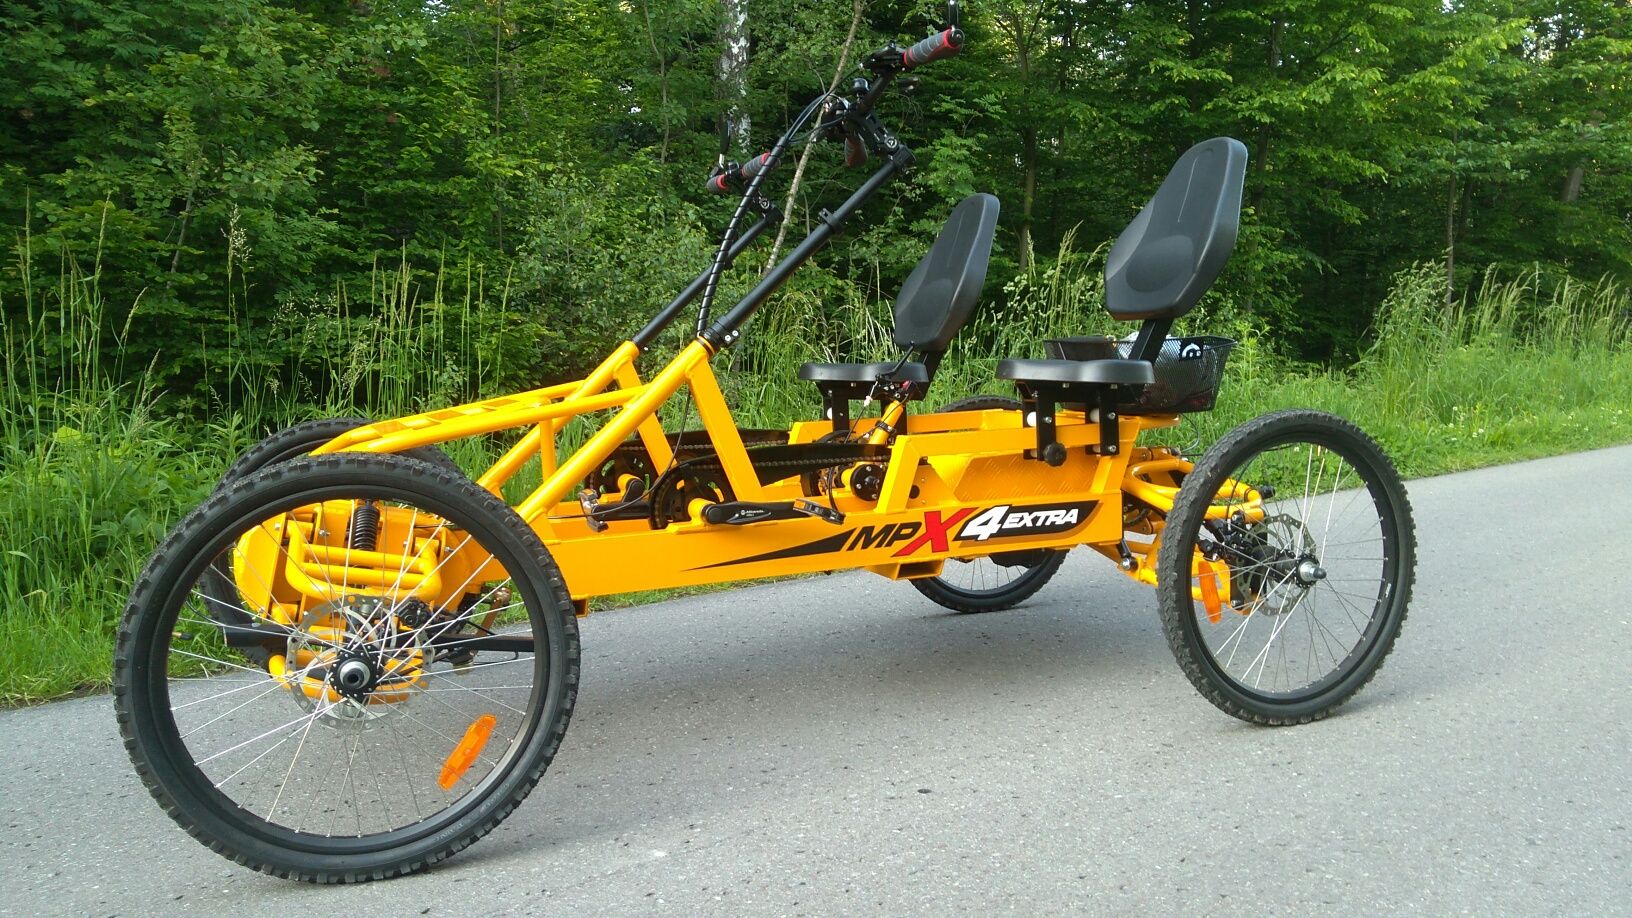 MPX4-dwuosobowy rower hybrydowy, czterokołowy wspomagany elektrycznie